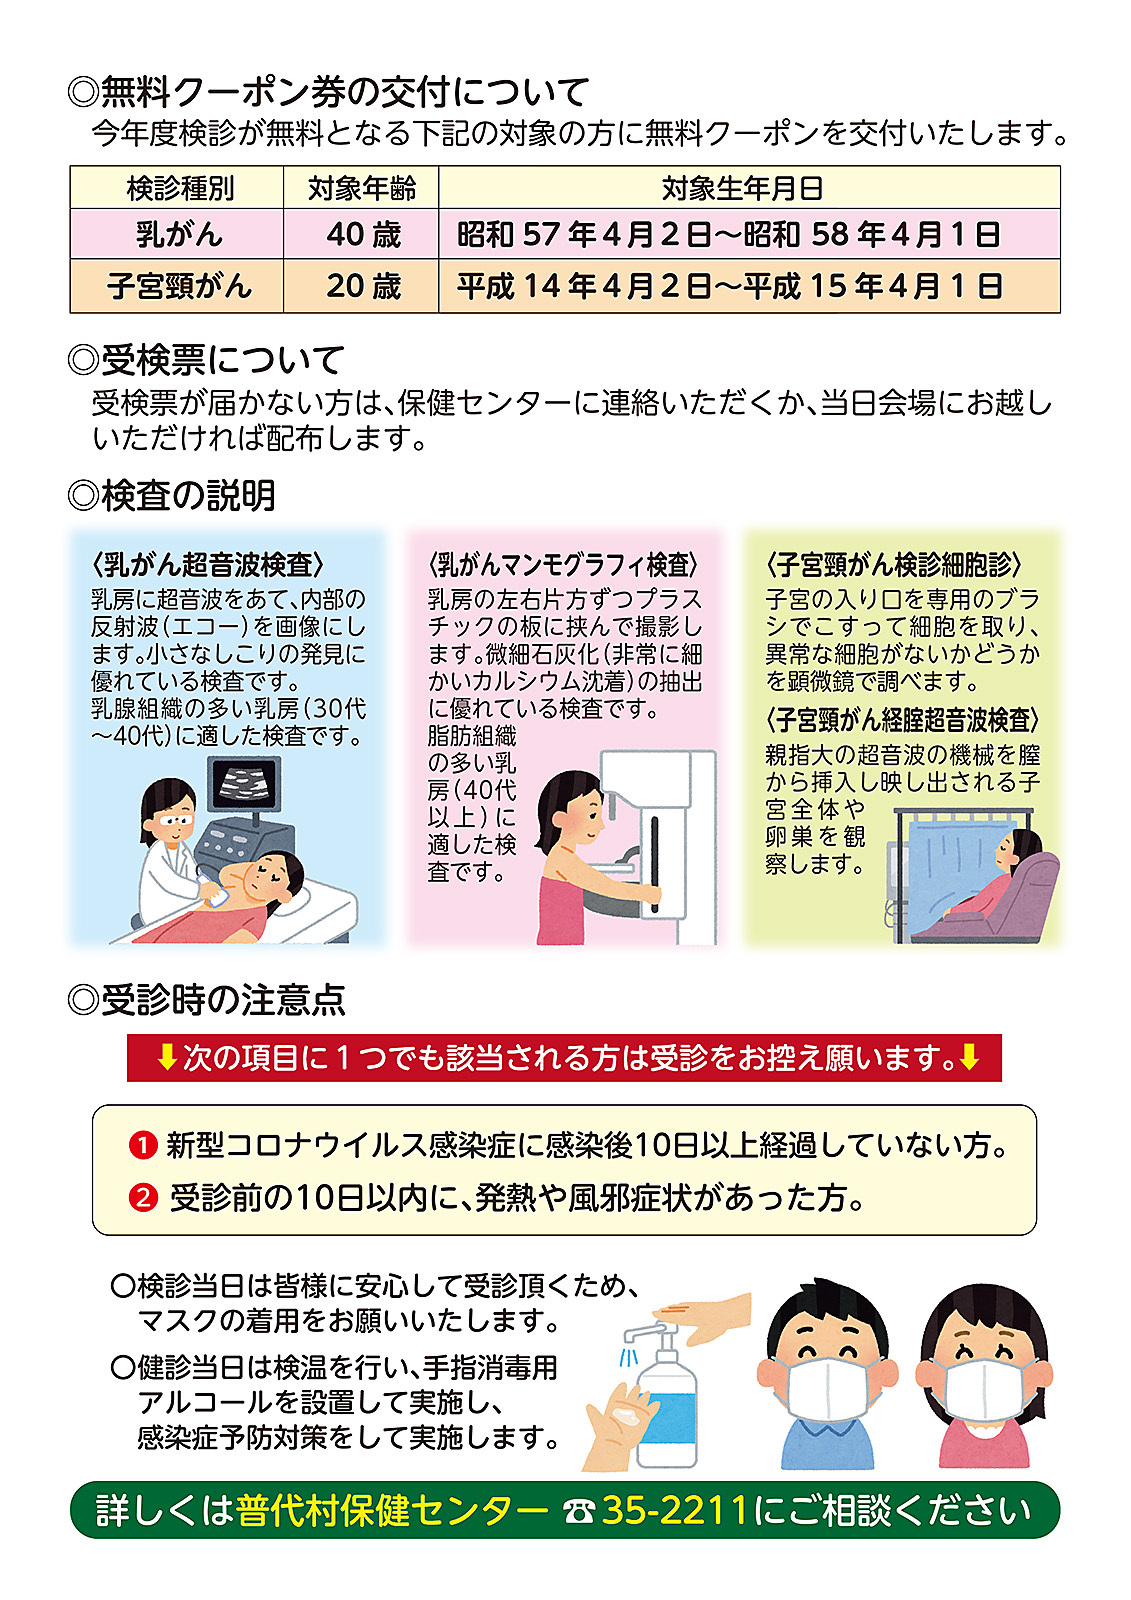 全戸配布「乳がん」「子宮頸がん」健診のお知らせ-2.jpg